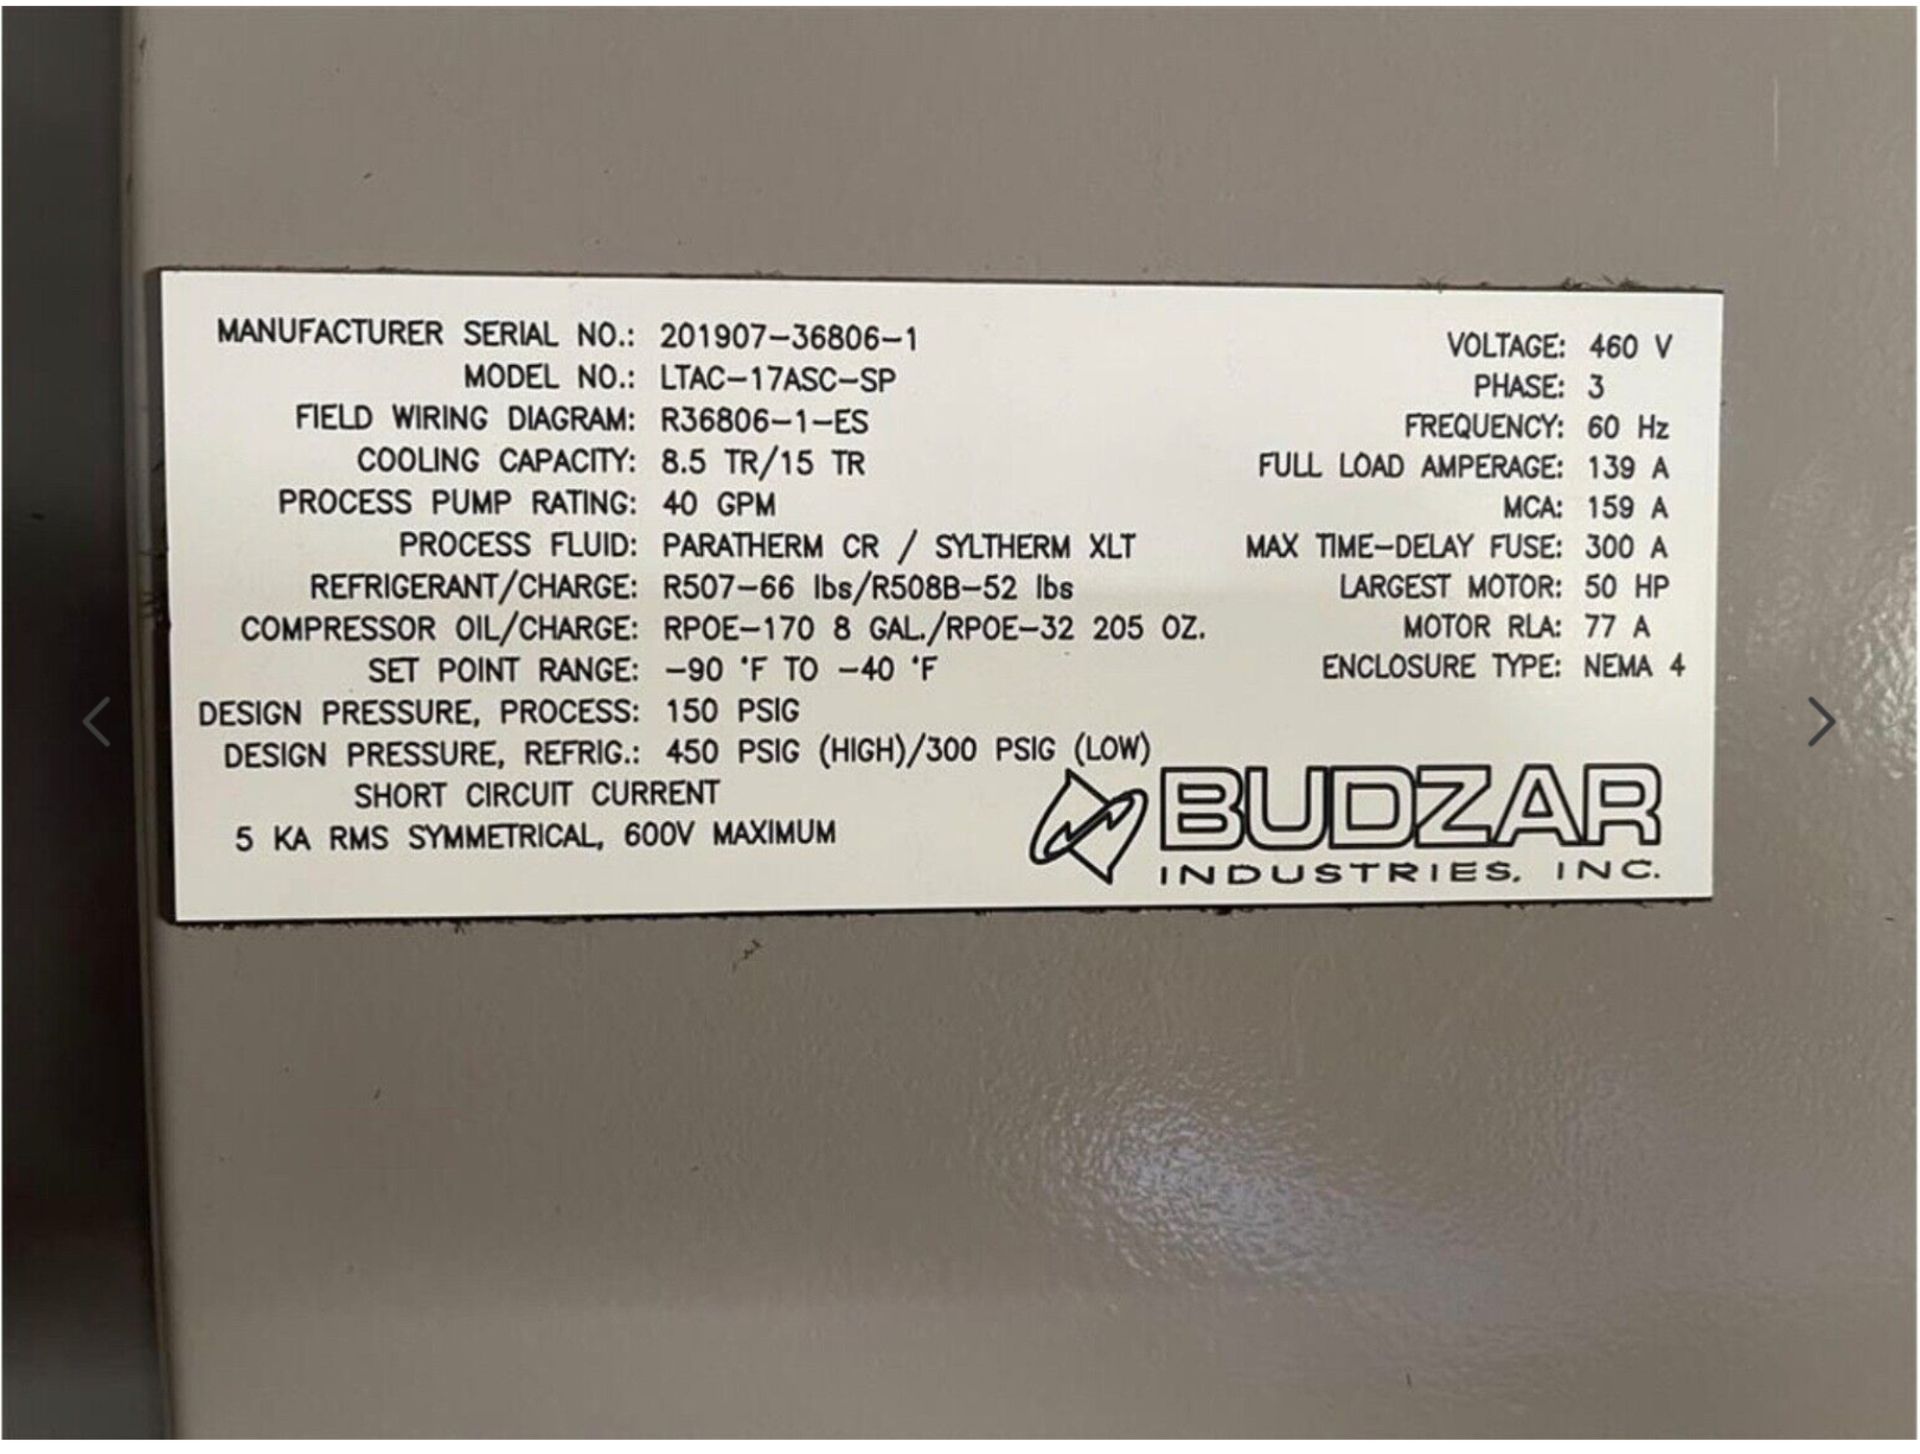 New/Unused Ultra low temperature Chiller. Model BUDZAR LTAC-17ASC-SP